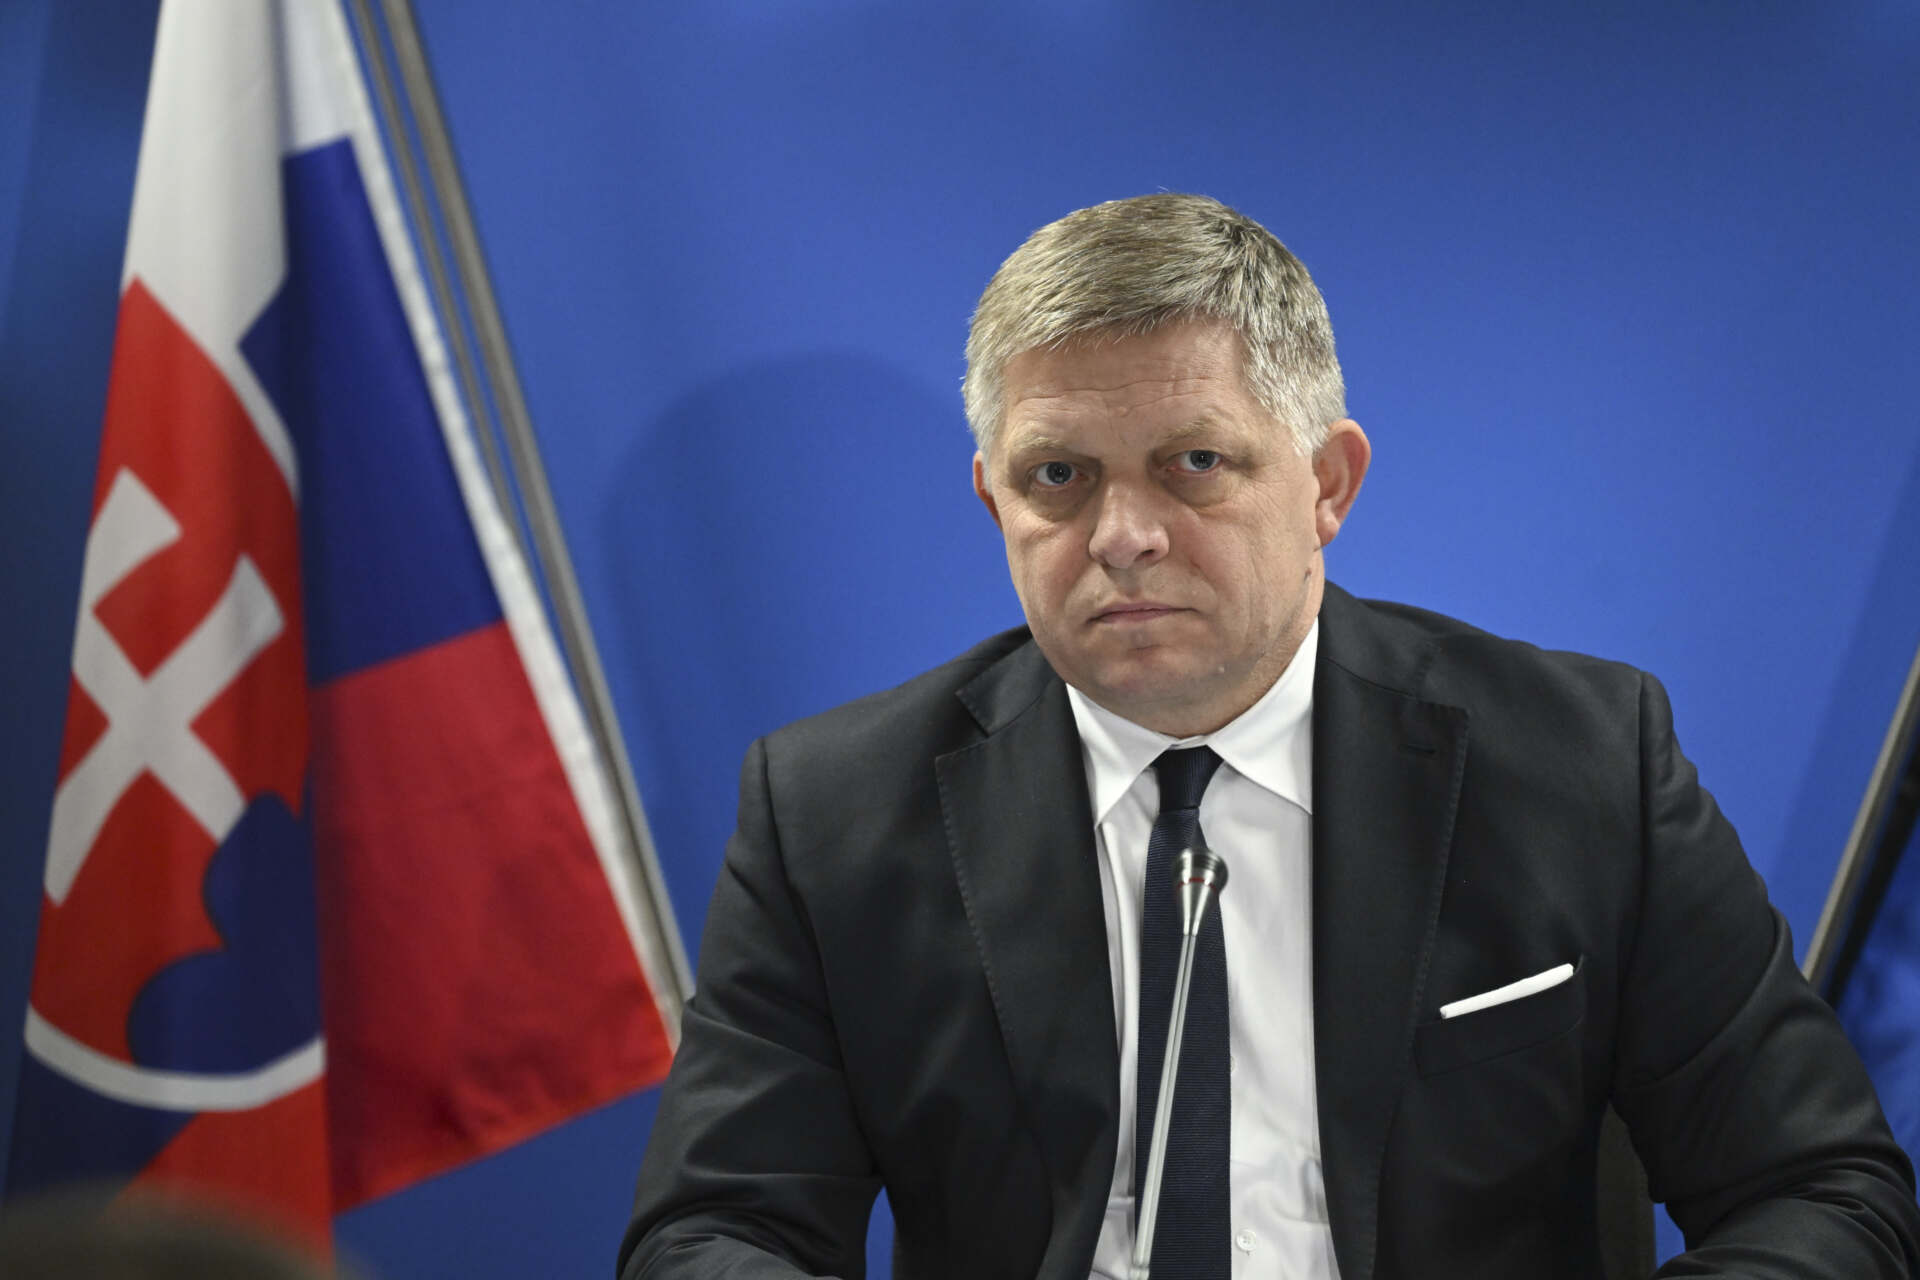 Món: Hospitalitzat crític el primer ministre d’Eslovàquia després d’un tiroteig